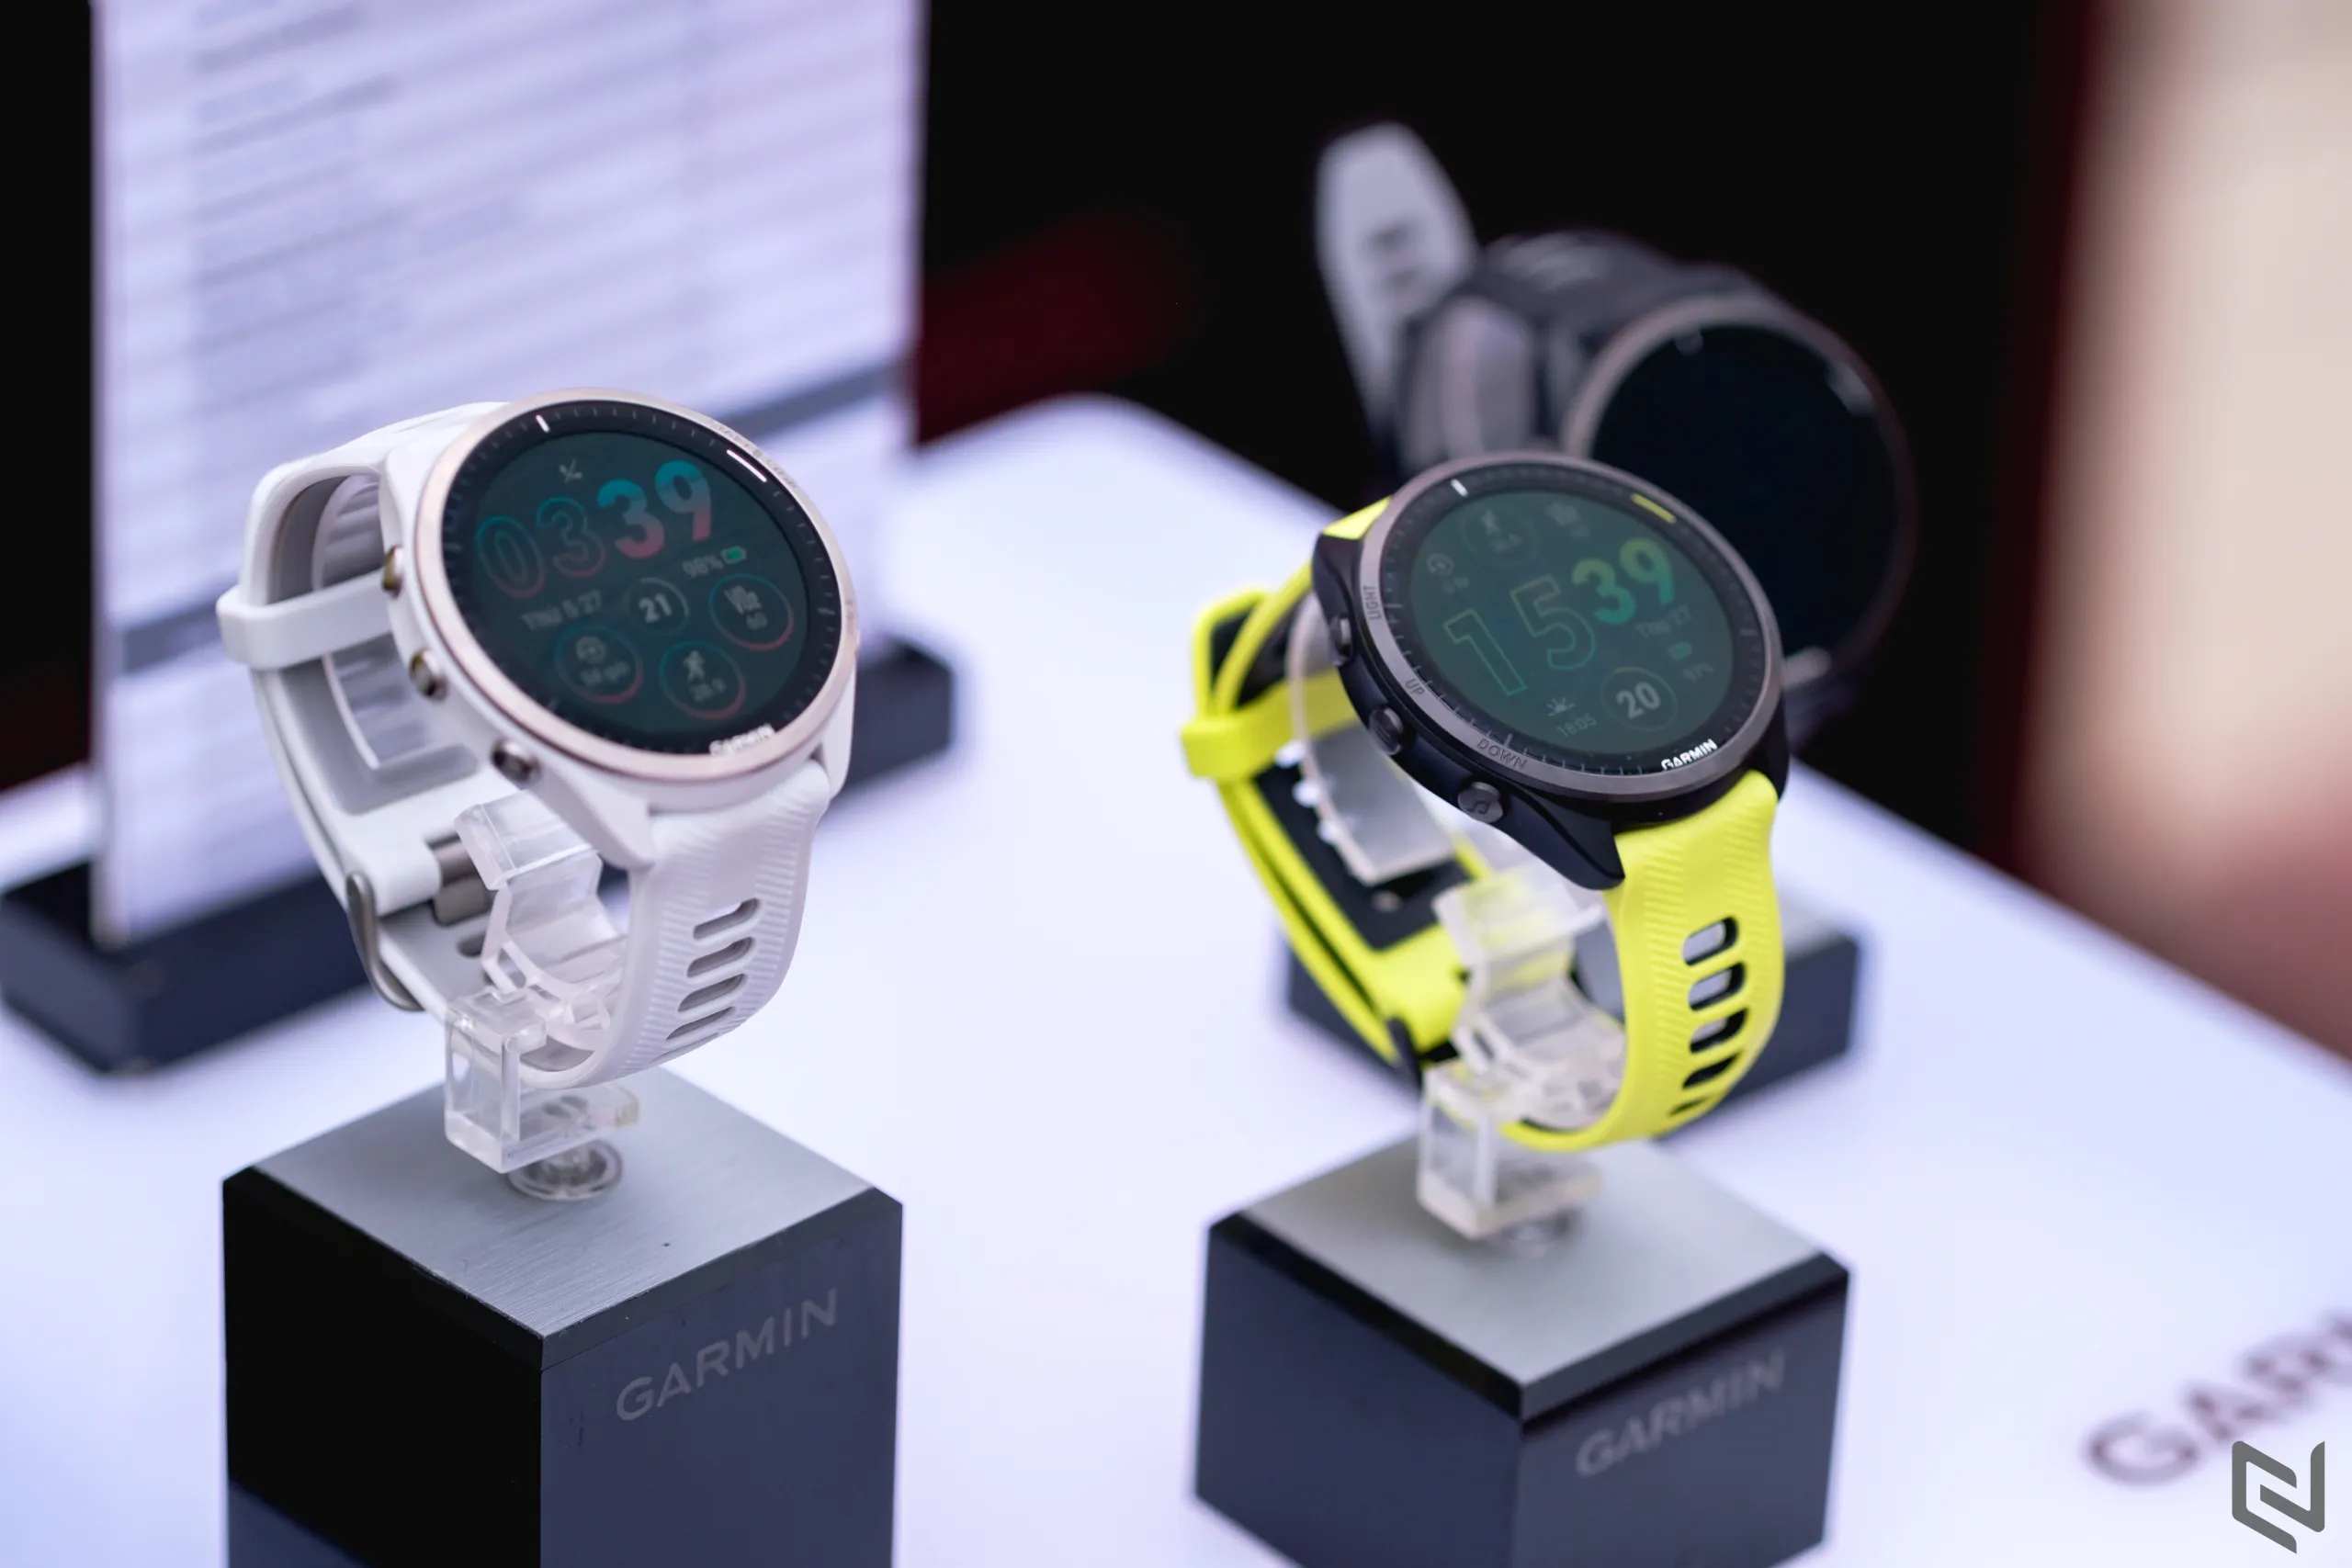 Garmin ra mắt đồng hồ chạy bộ GPS màn hình AMOLED đầu tiên thế giới – Forerunner 265 và Forerunner 965